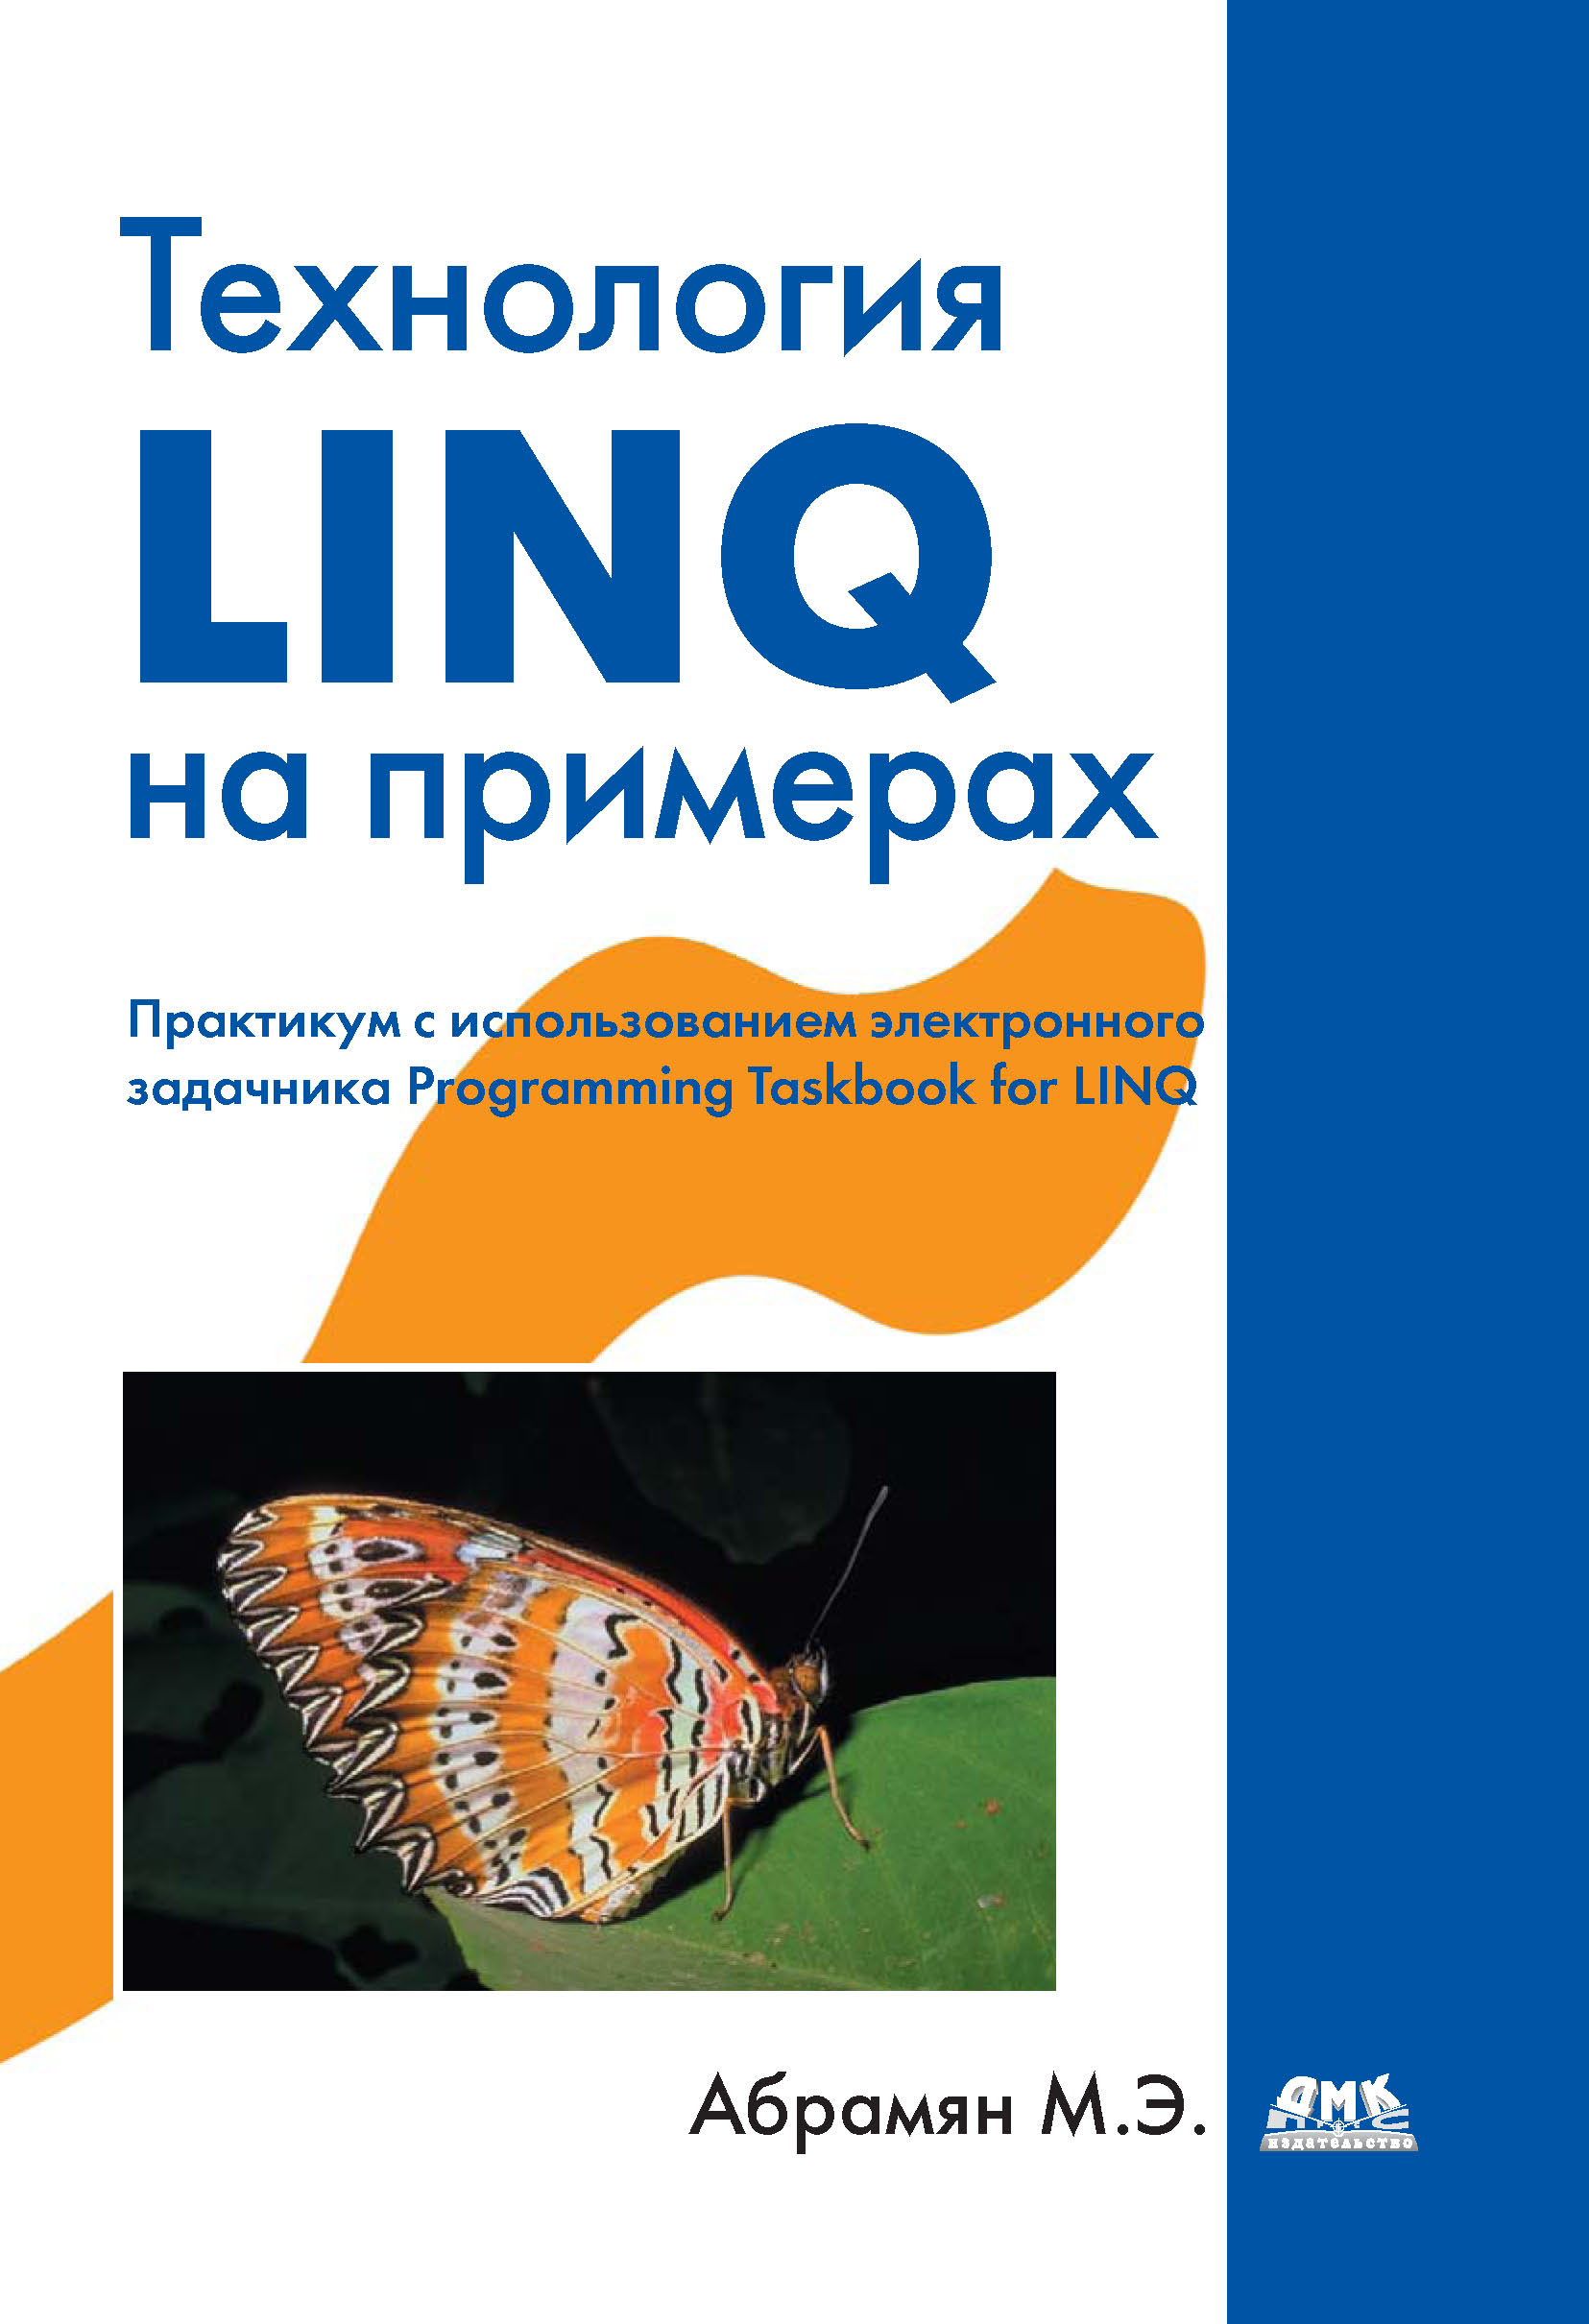 Книга  Технология LINQ на примерах. Практикум с использованием электронного задачника Programming Taskbook for LINQ созданная М. Э. Абрамян может относится к жанру программирование. Стоимость электронной книги Технология LINQ на примерах. Практикум с использованием электронного задачника Programming Taskbook for LINQ с идентификатором 10012823 составляет 279.00 руб.